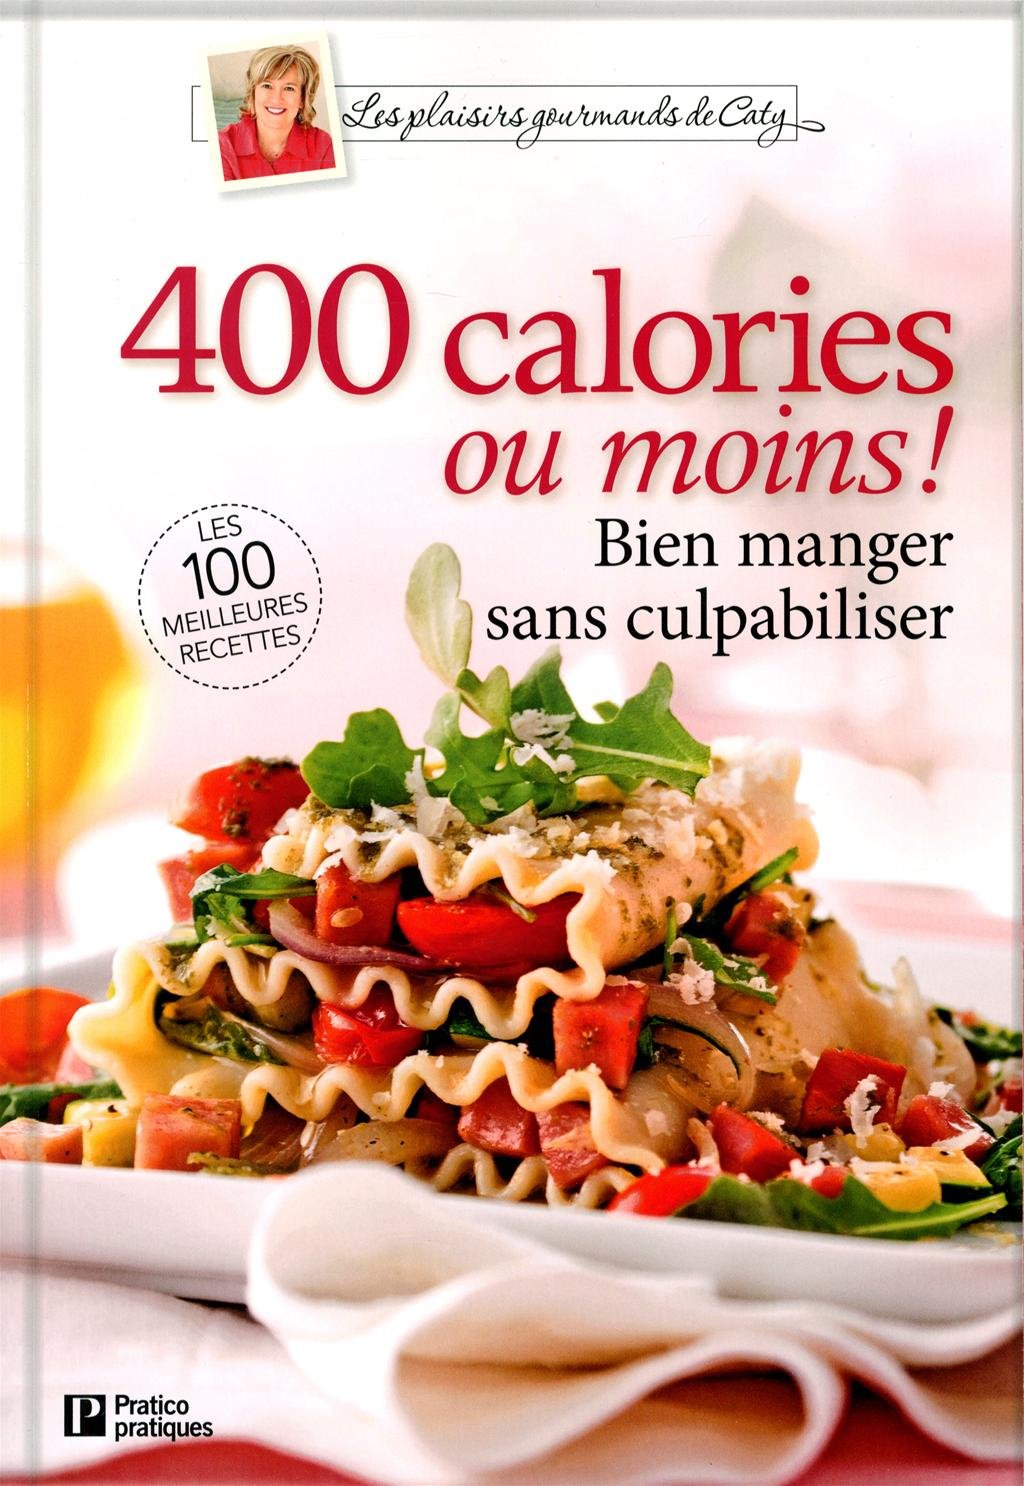 Les plaisirs gourmands de Caty : 400 calories ou moins! : Bien manger sans culpabiliser - Caty Bérubé